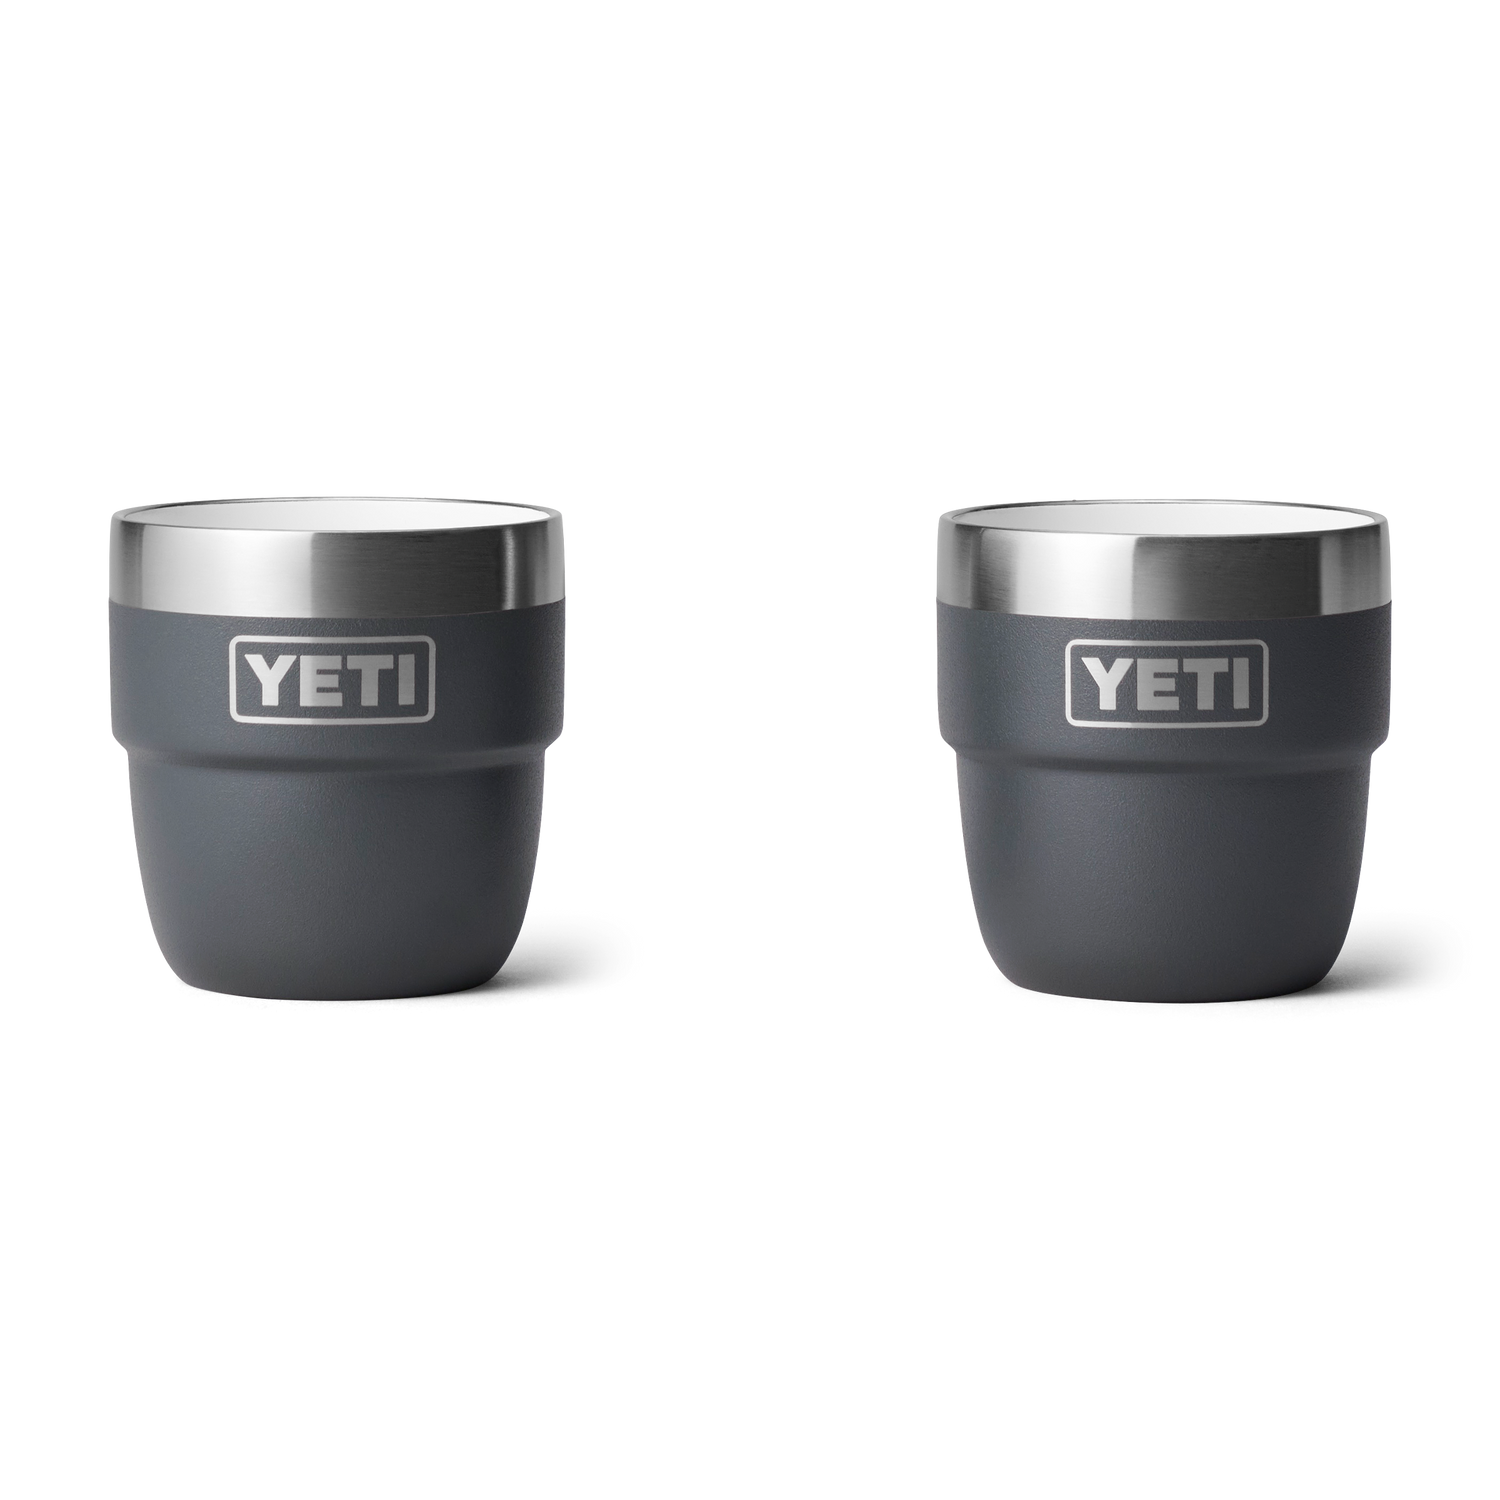 YETI: Introducing New YETI Barware